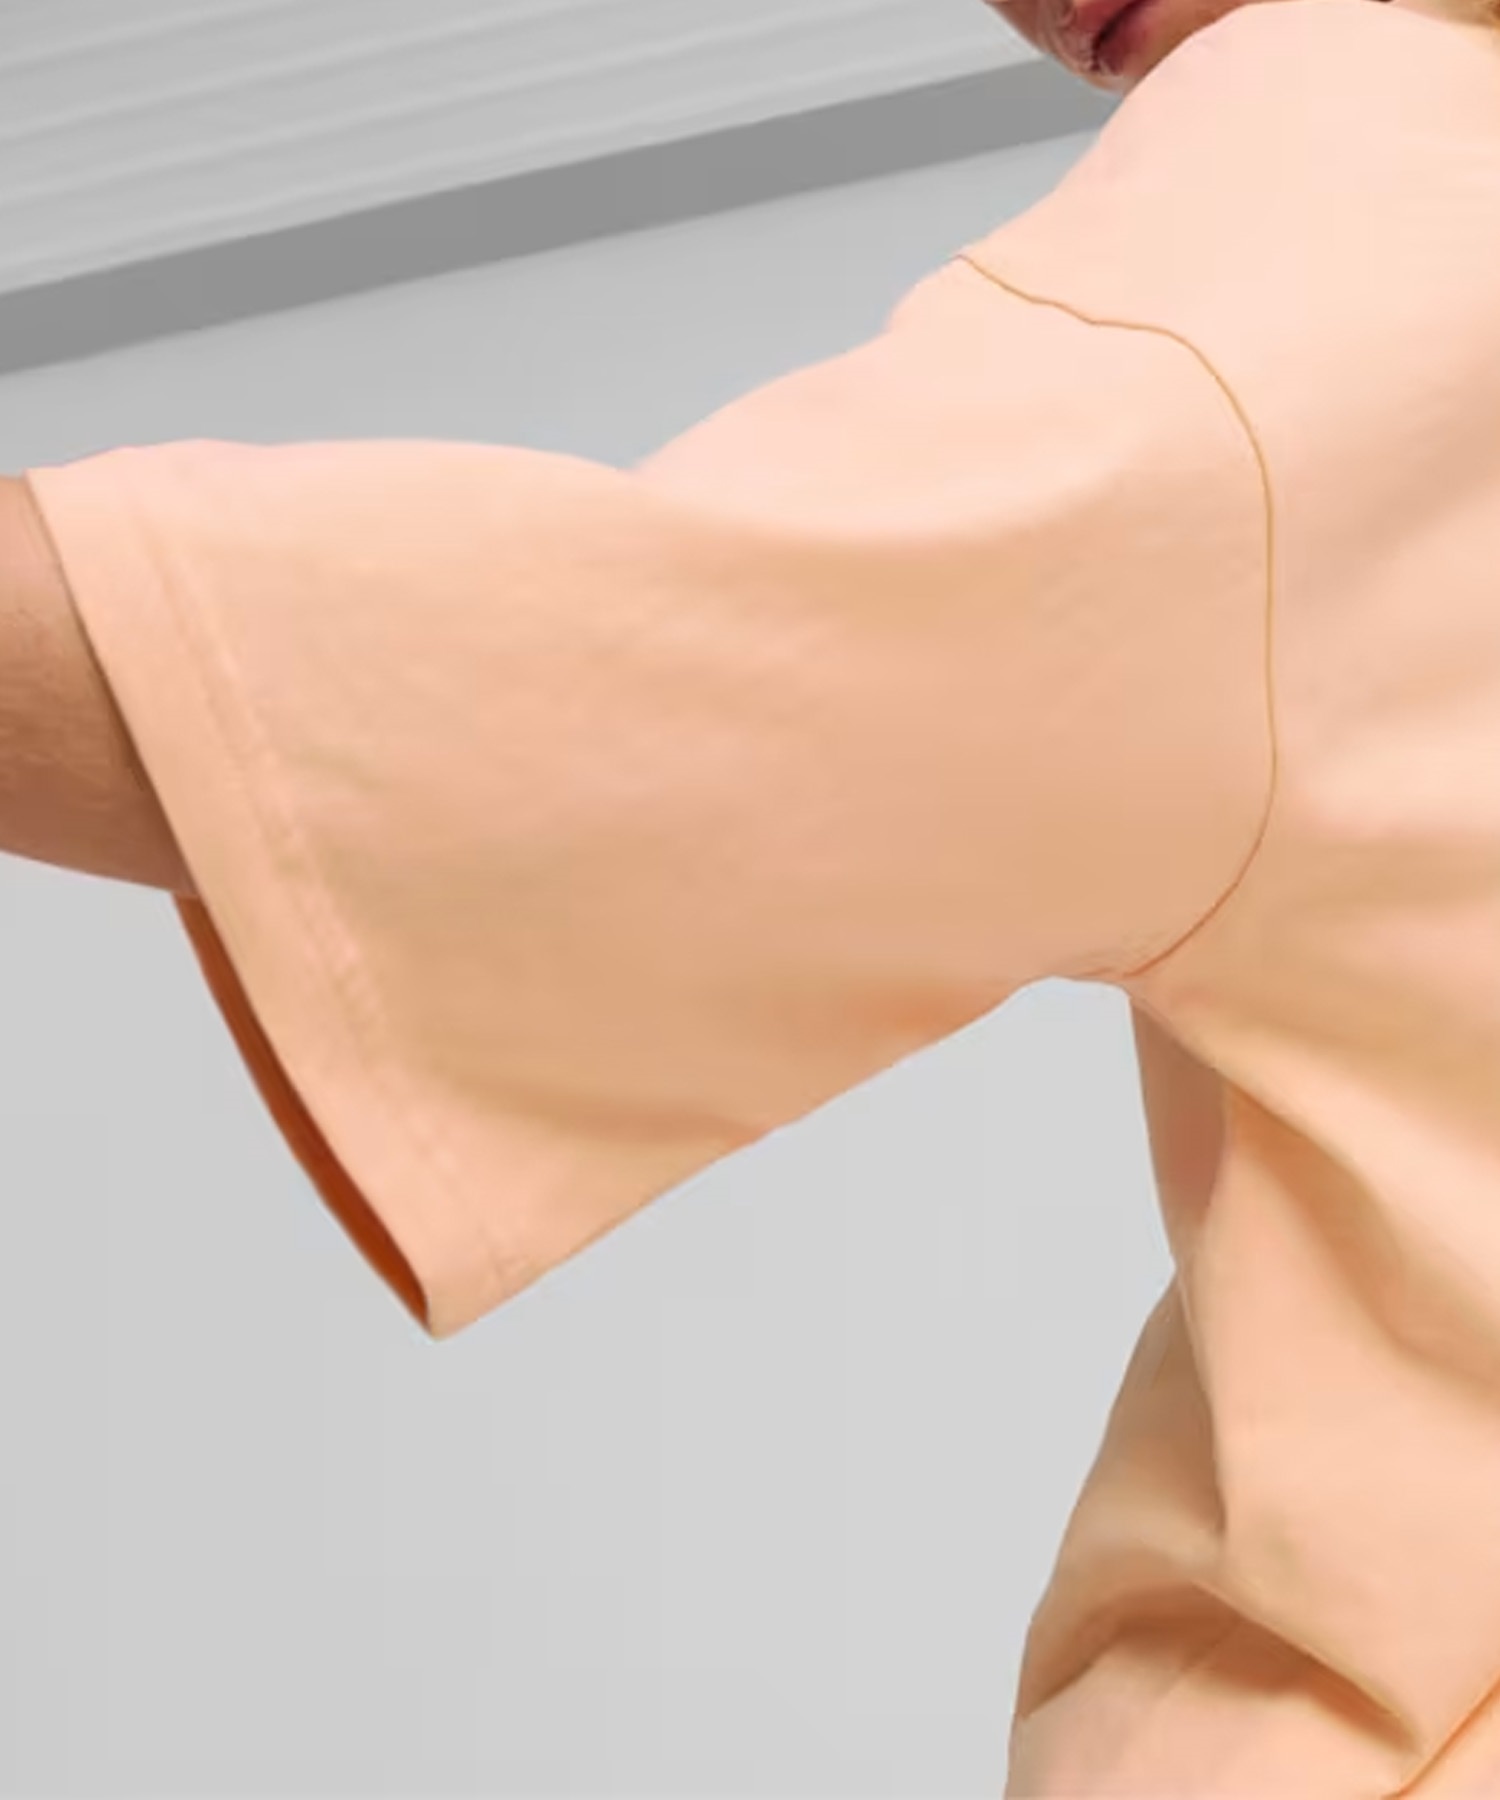 PUMA プーマ メンズ Tシャツ 半袖 ワンポイント ロゴ 刺繍 シンプル ビッグシルエット クルーネック 626025(45-S)